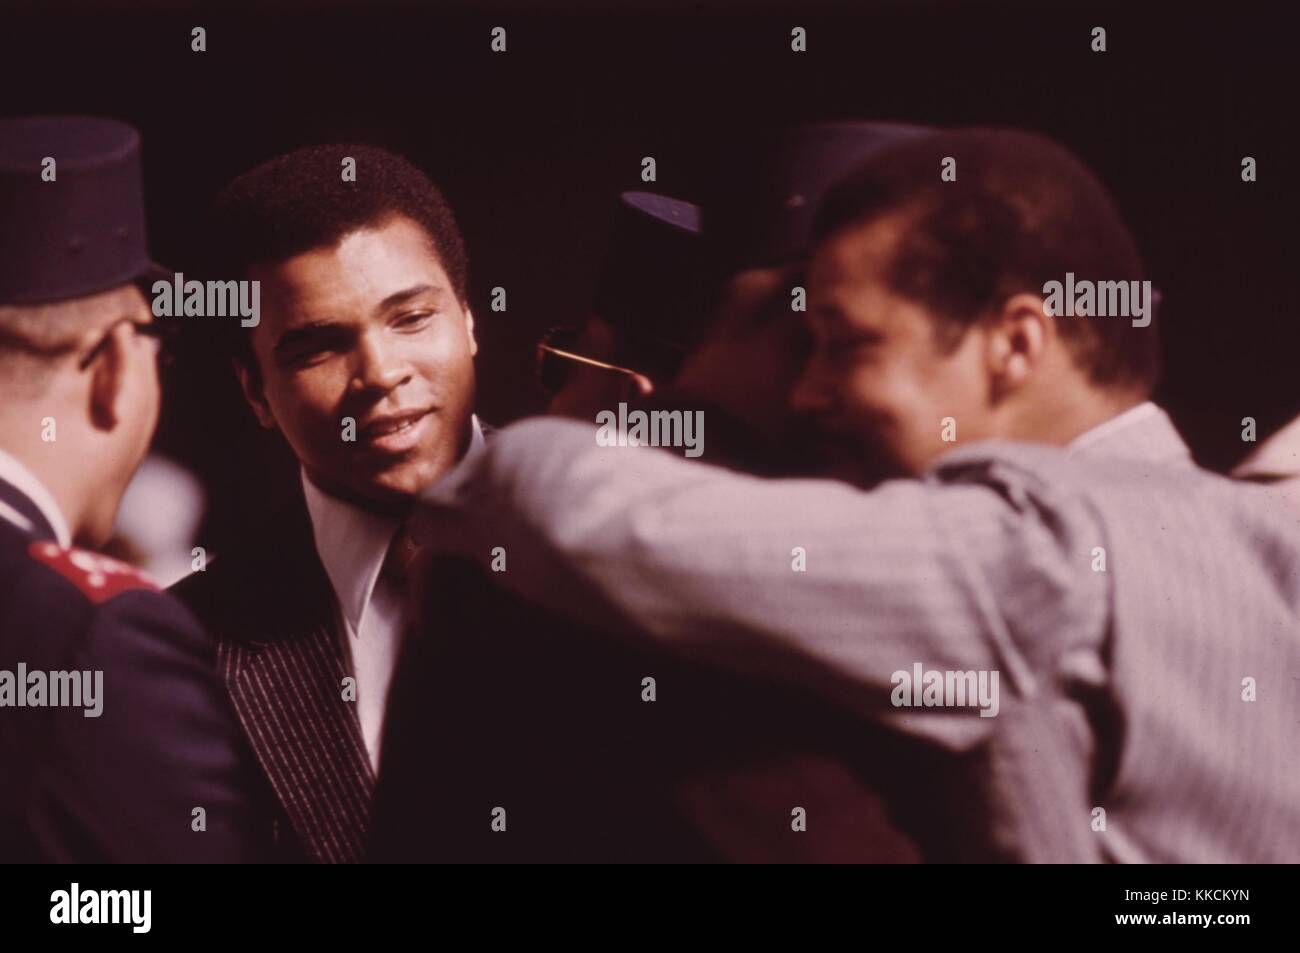 Il campione di pugilato dei pesi massimi Muhammad Ali partecipa a una celebrazione del giorno del Salvatore a Chicago, data dal leader religioso musulmano nero Elia Muhammad. Immagine gentilmente concessa da John White/US National Archives. Marzo 1974. Foto Stock